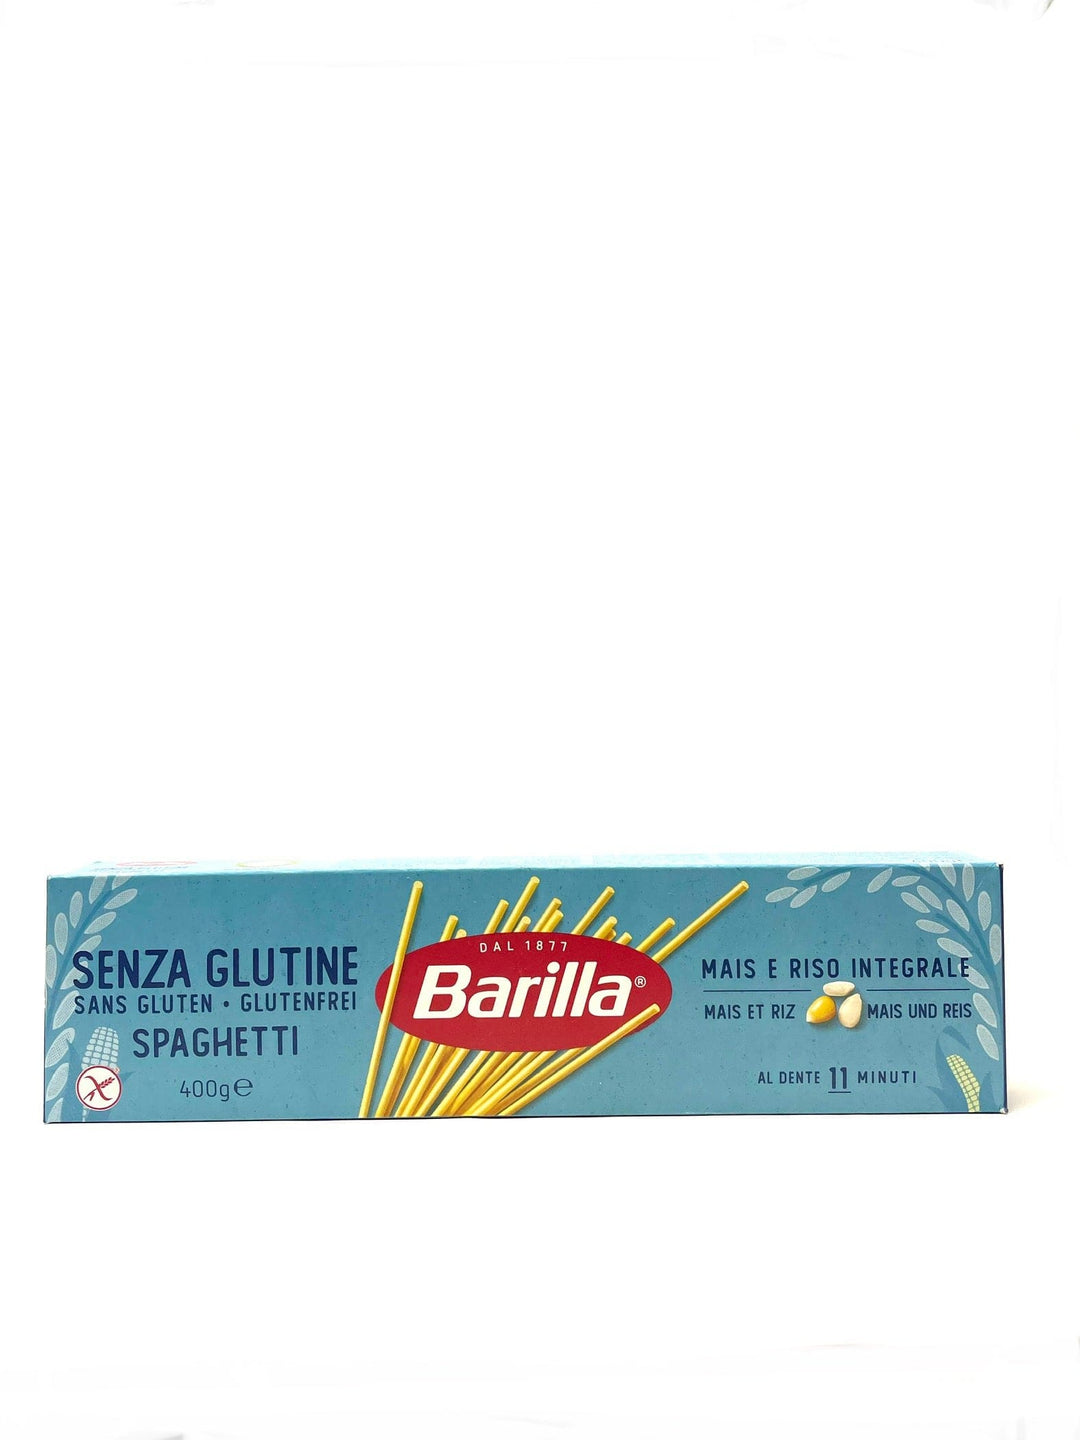 Barilla Senza Glutine Free Spaghetti 400g